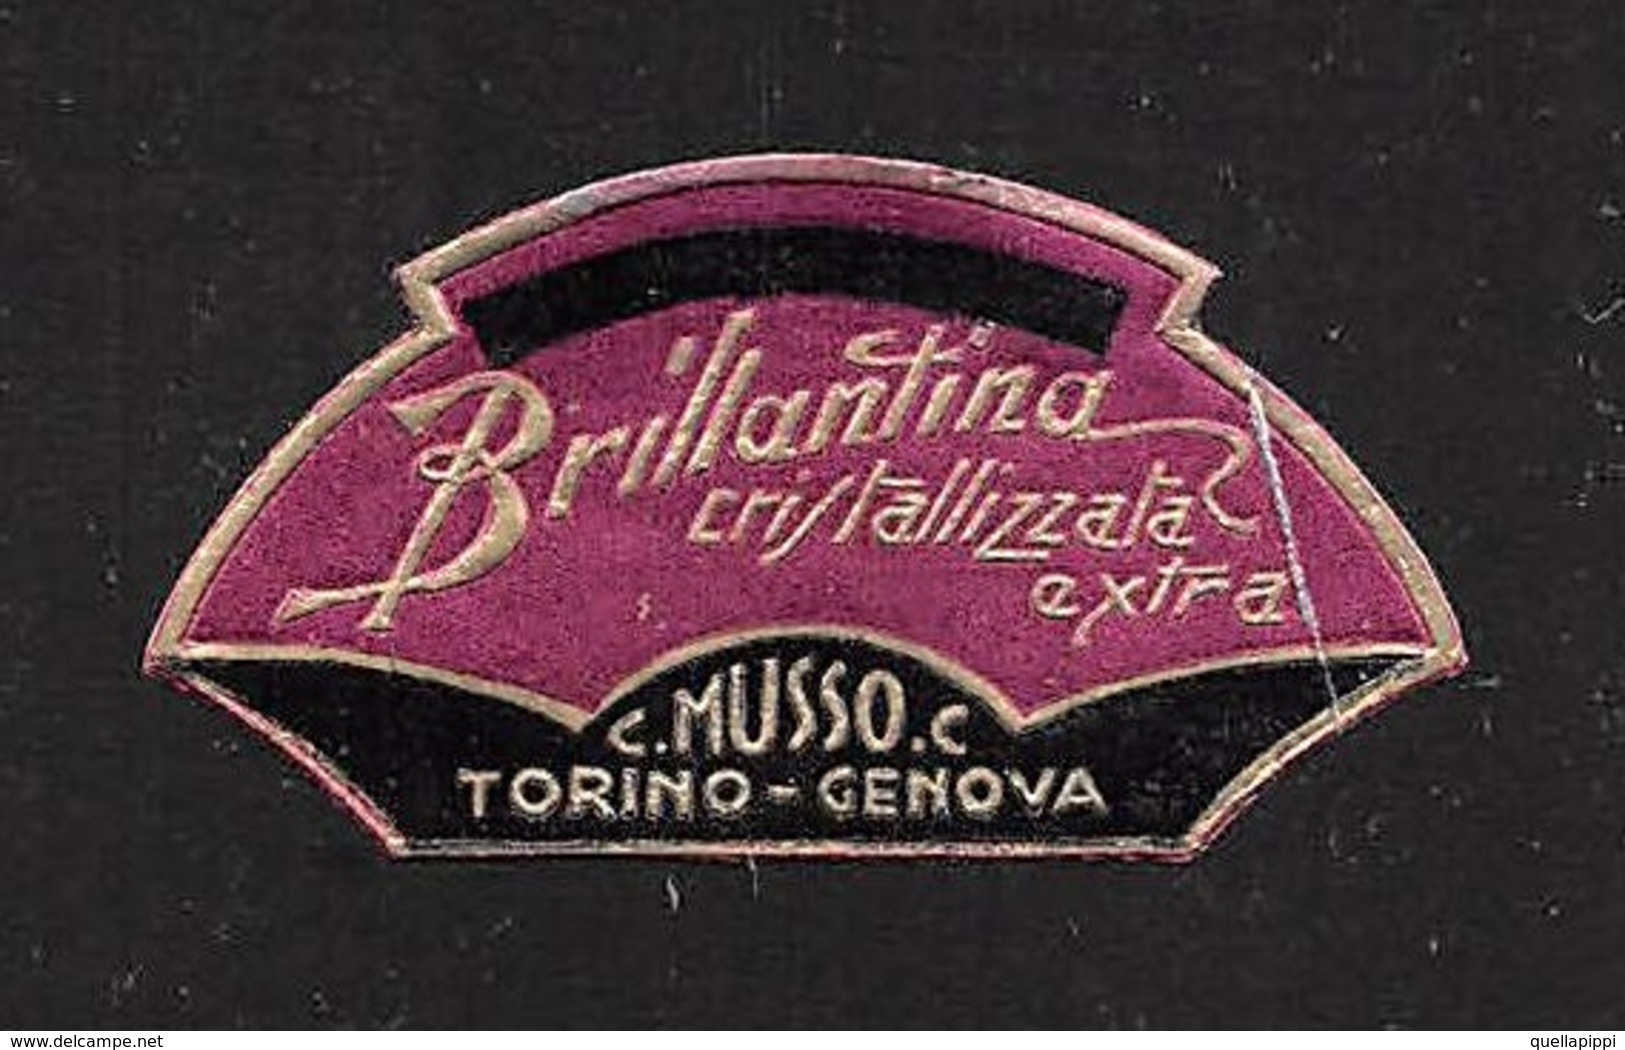 07667 "BRILLANTINA CRISTALLIZZATA EXTRA - C. MUSSO C. - TORINO-GENOVA - 1920 CIRCA" ETICHETTA  ORIGINALE - Etiketten